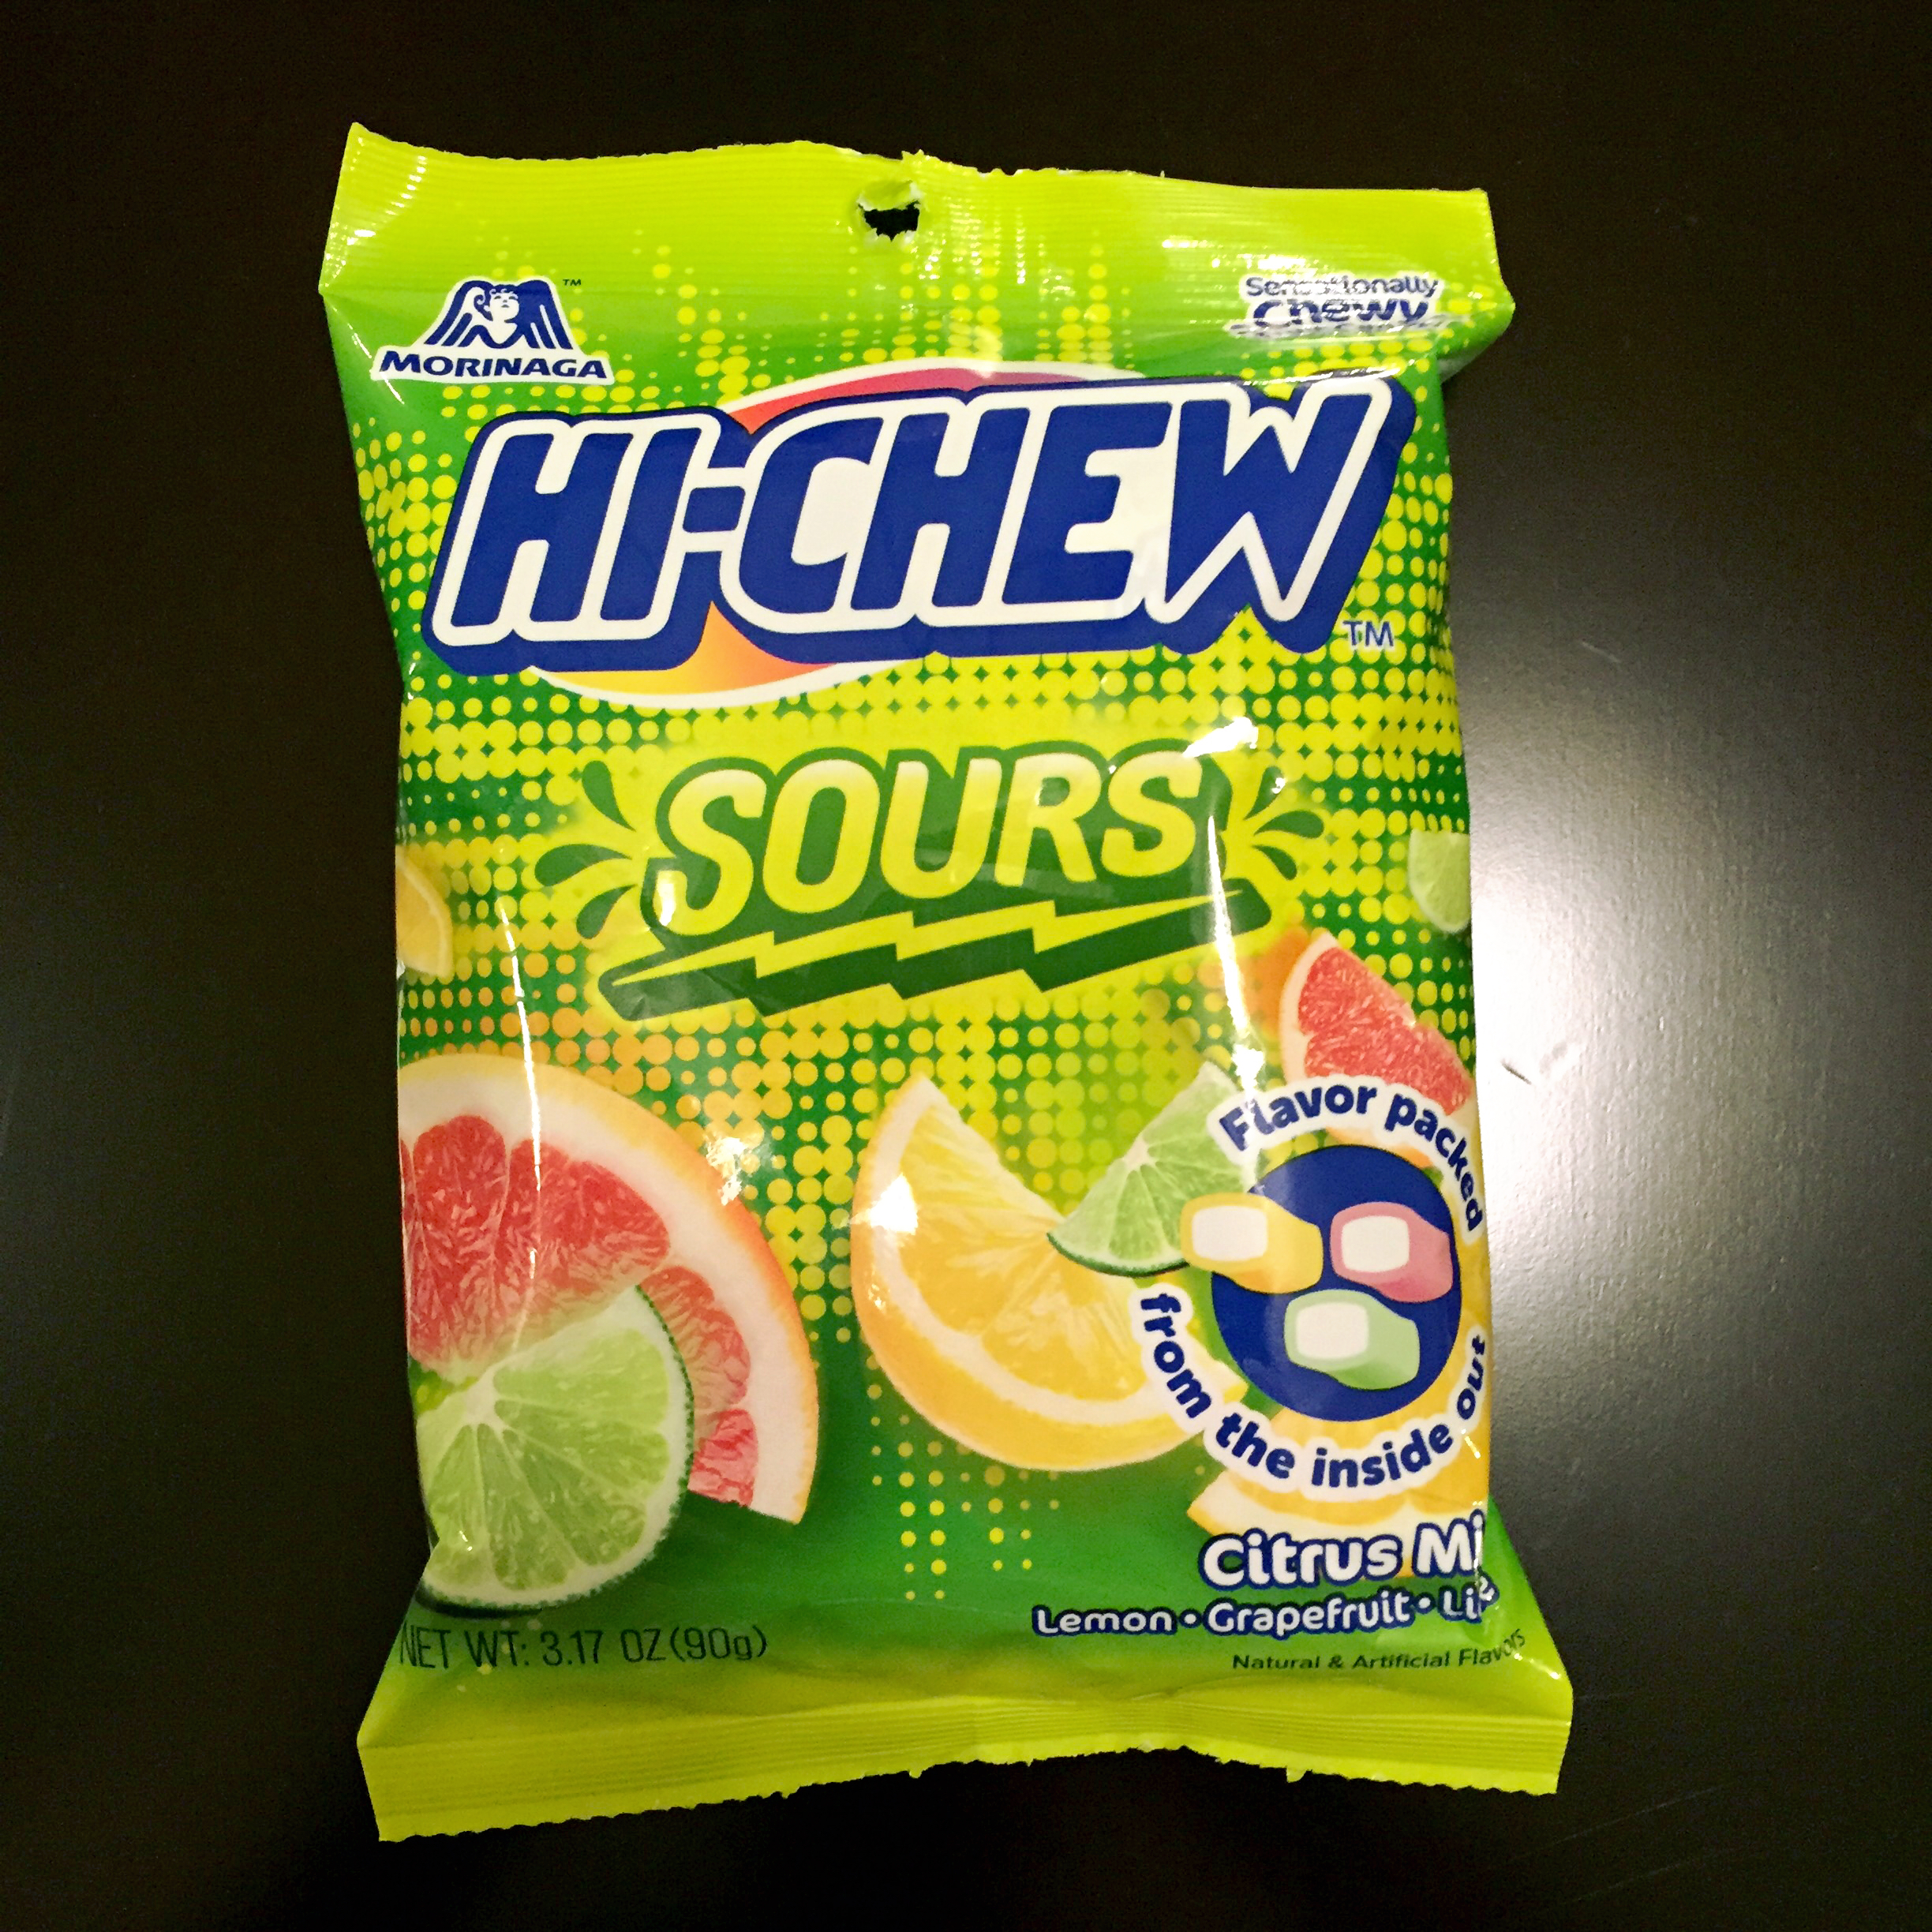 Hi-Chew Sours - Lemon, Lime and Grapefruit flavor